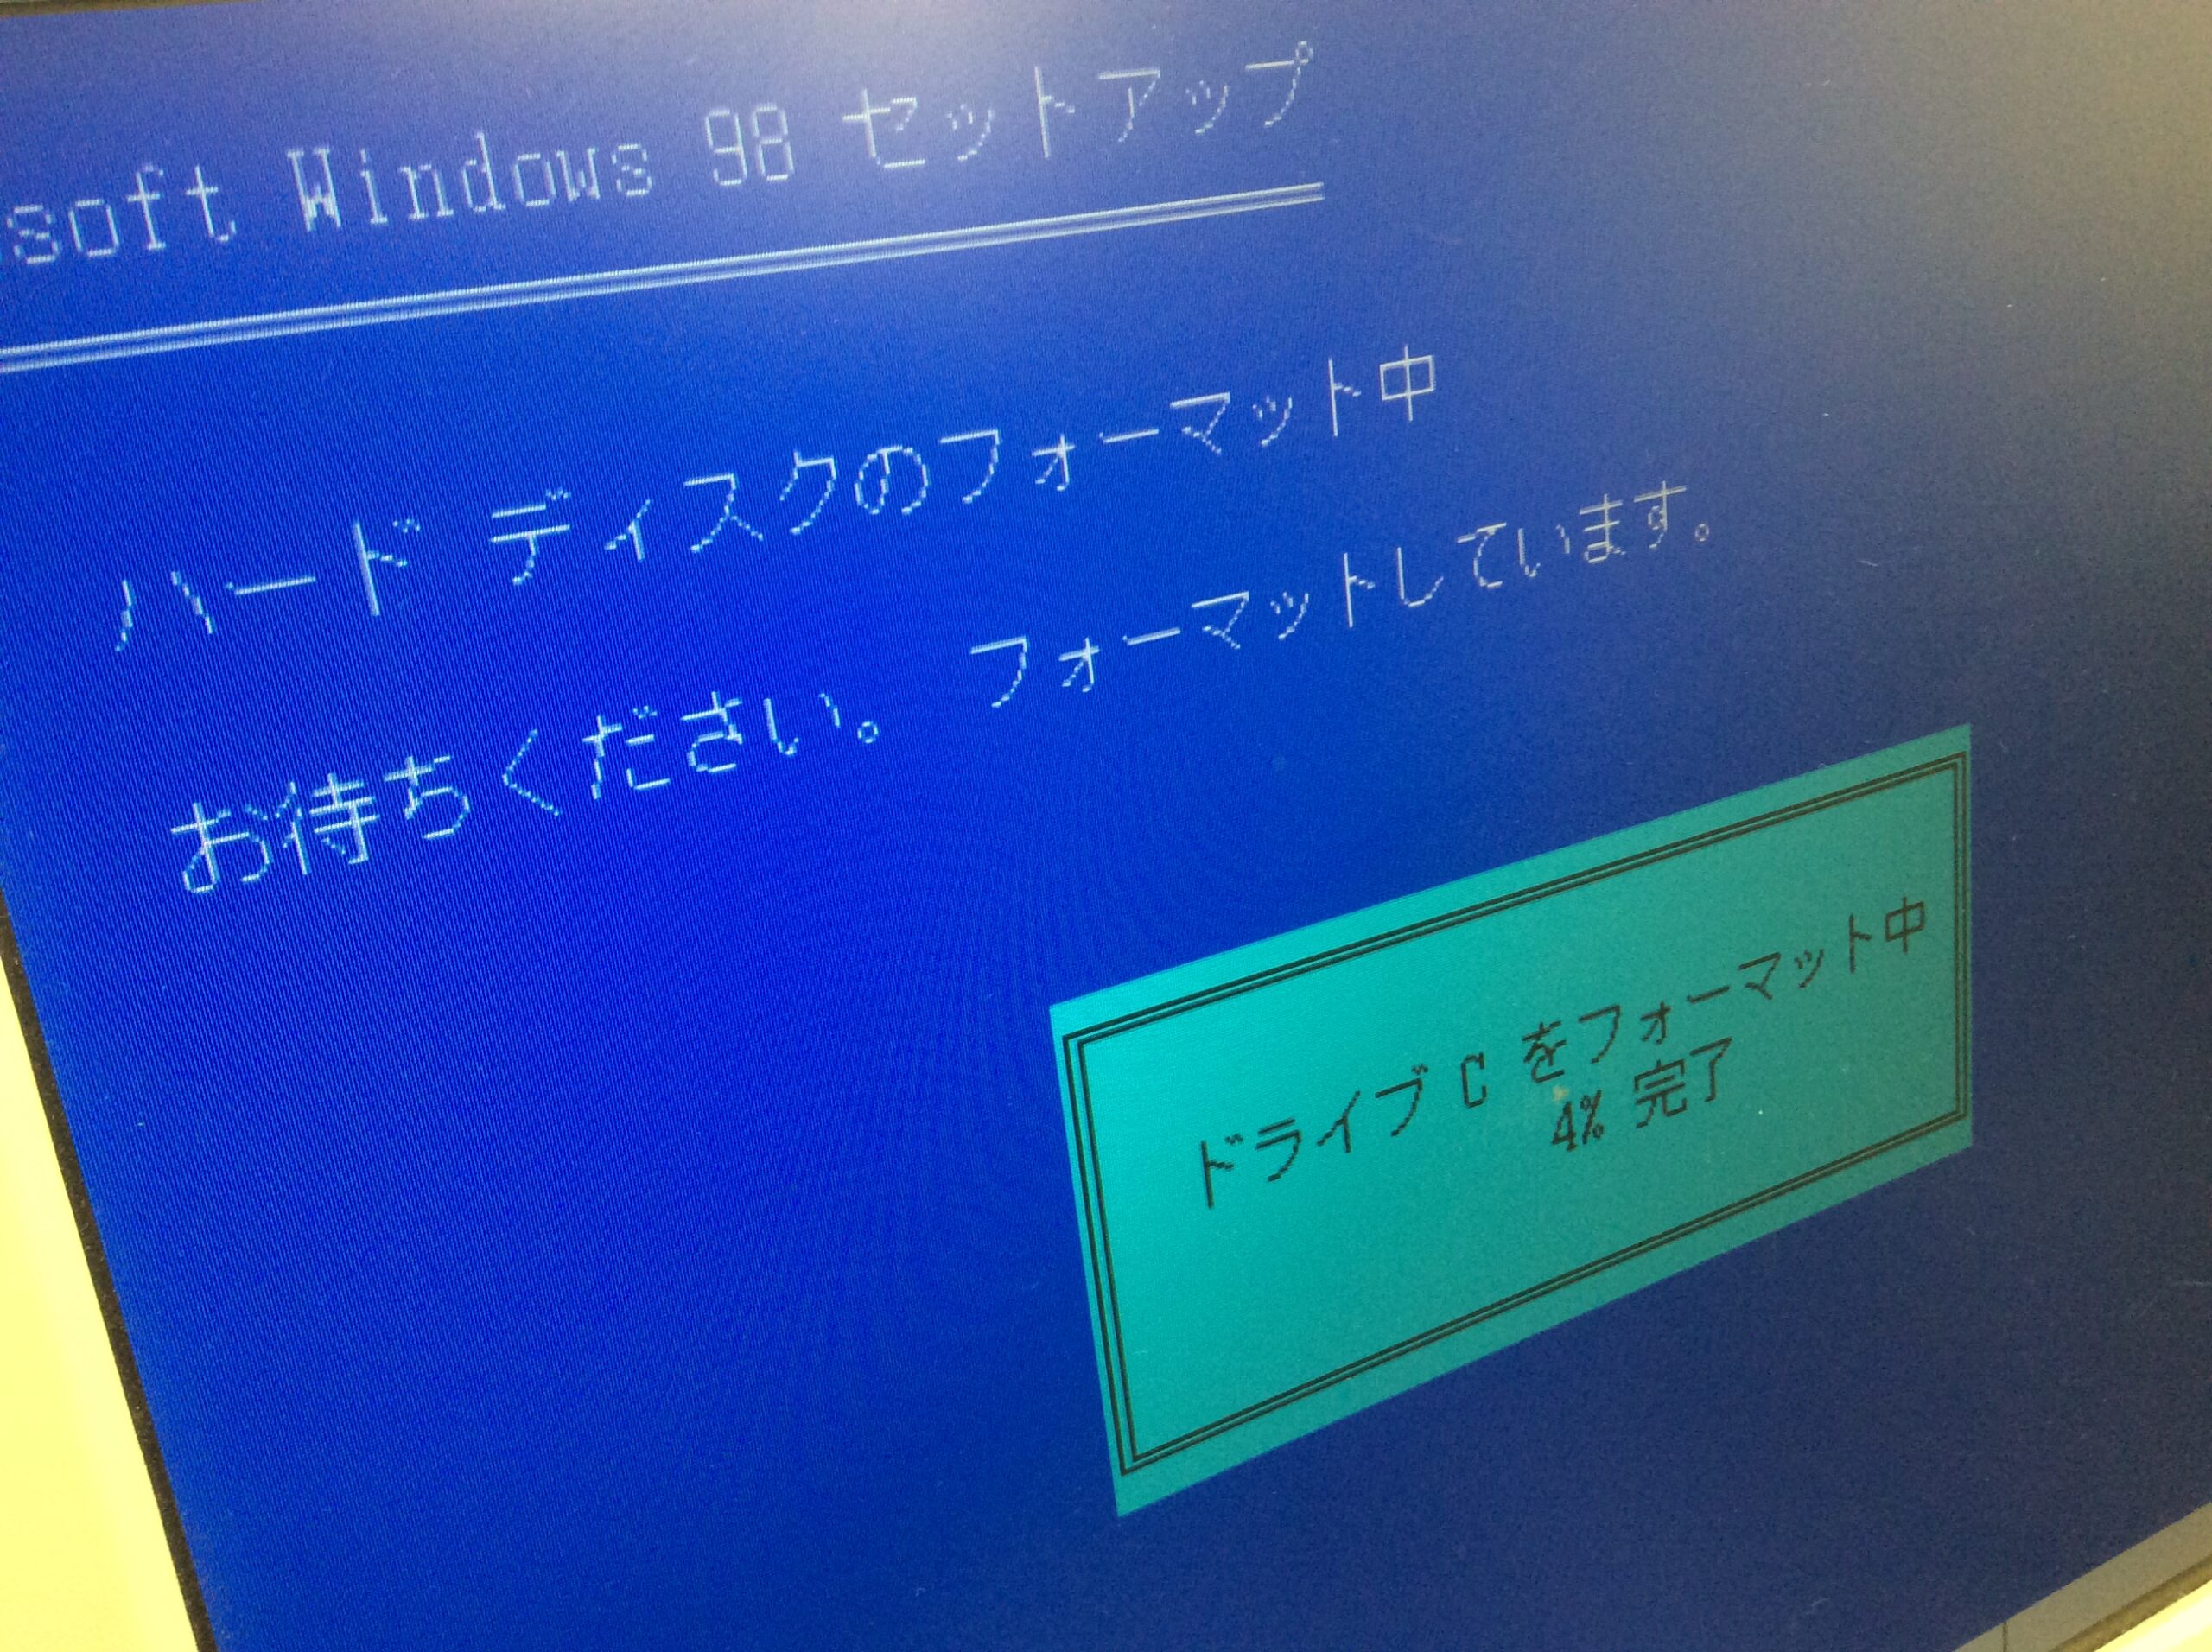 Windows98セットアップ画面